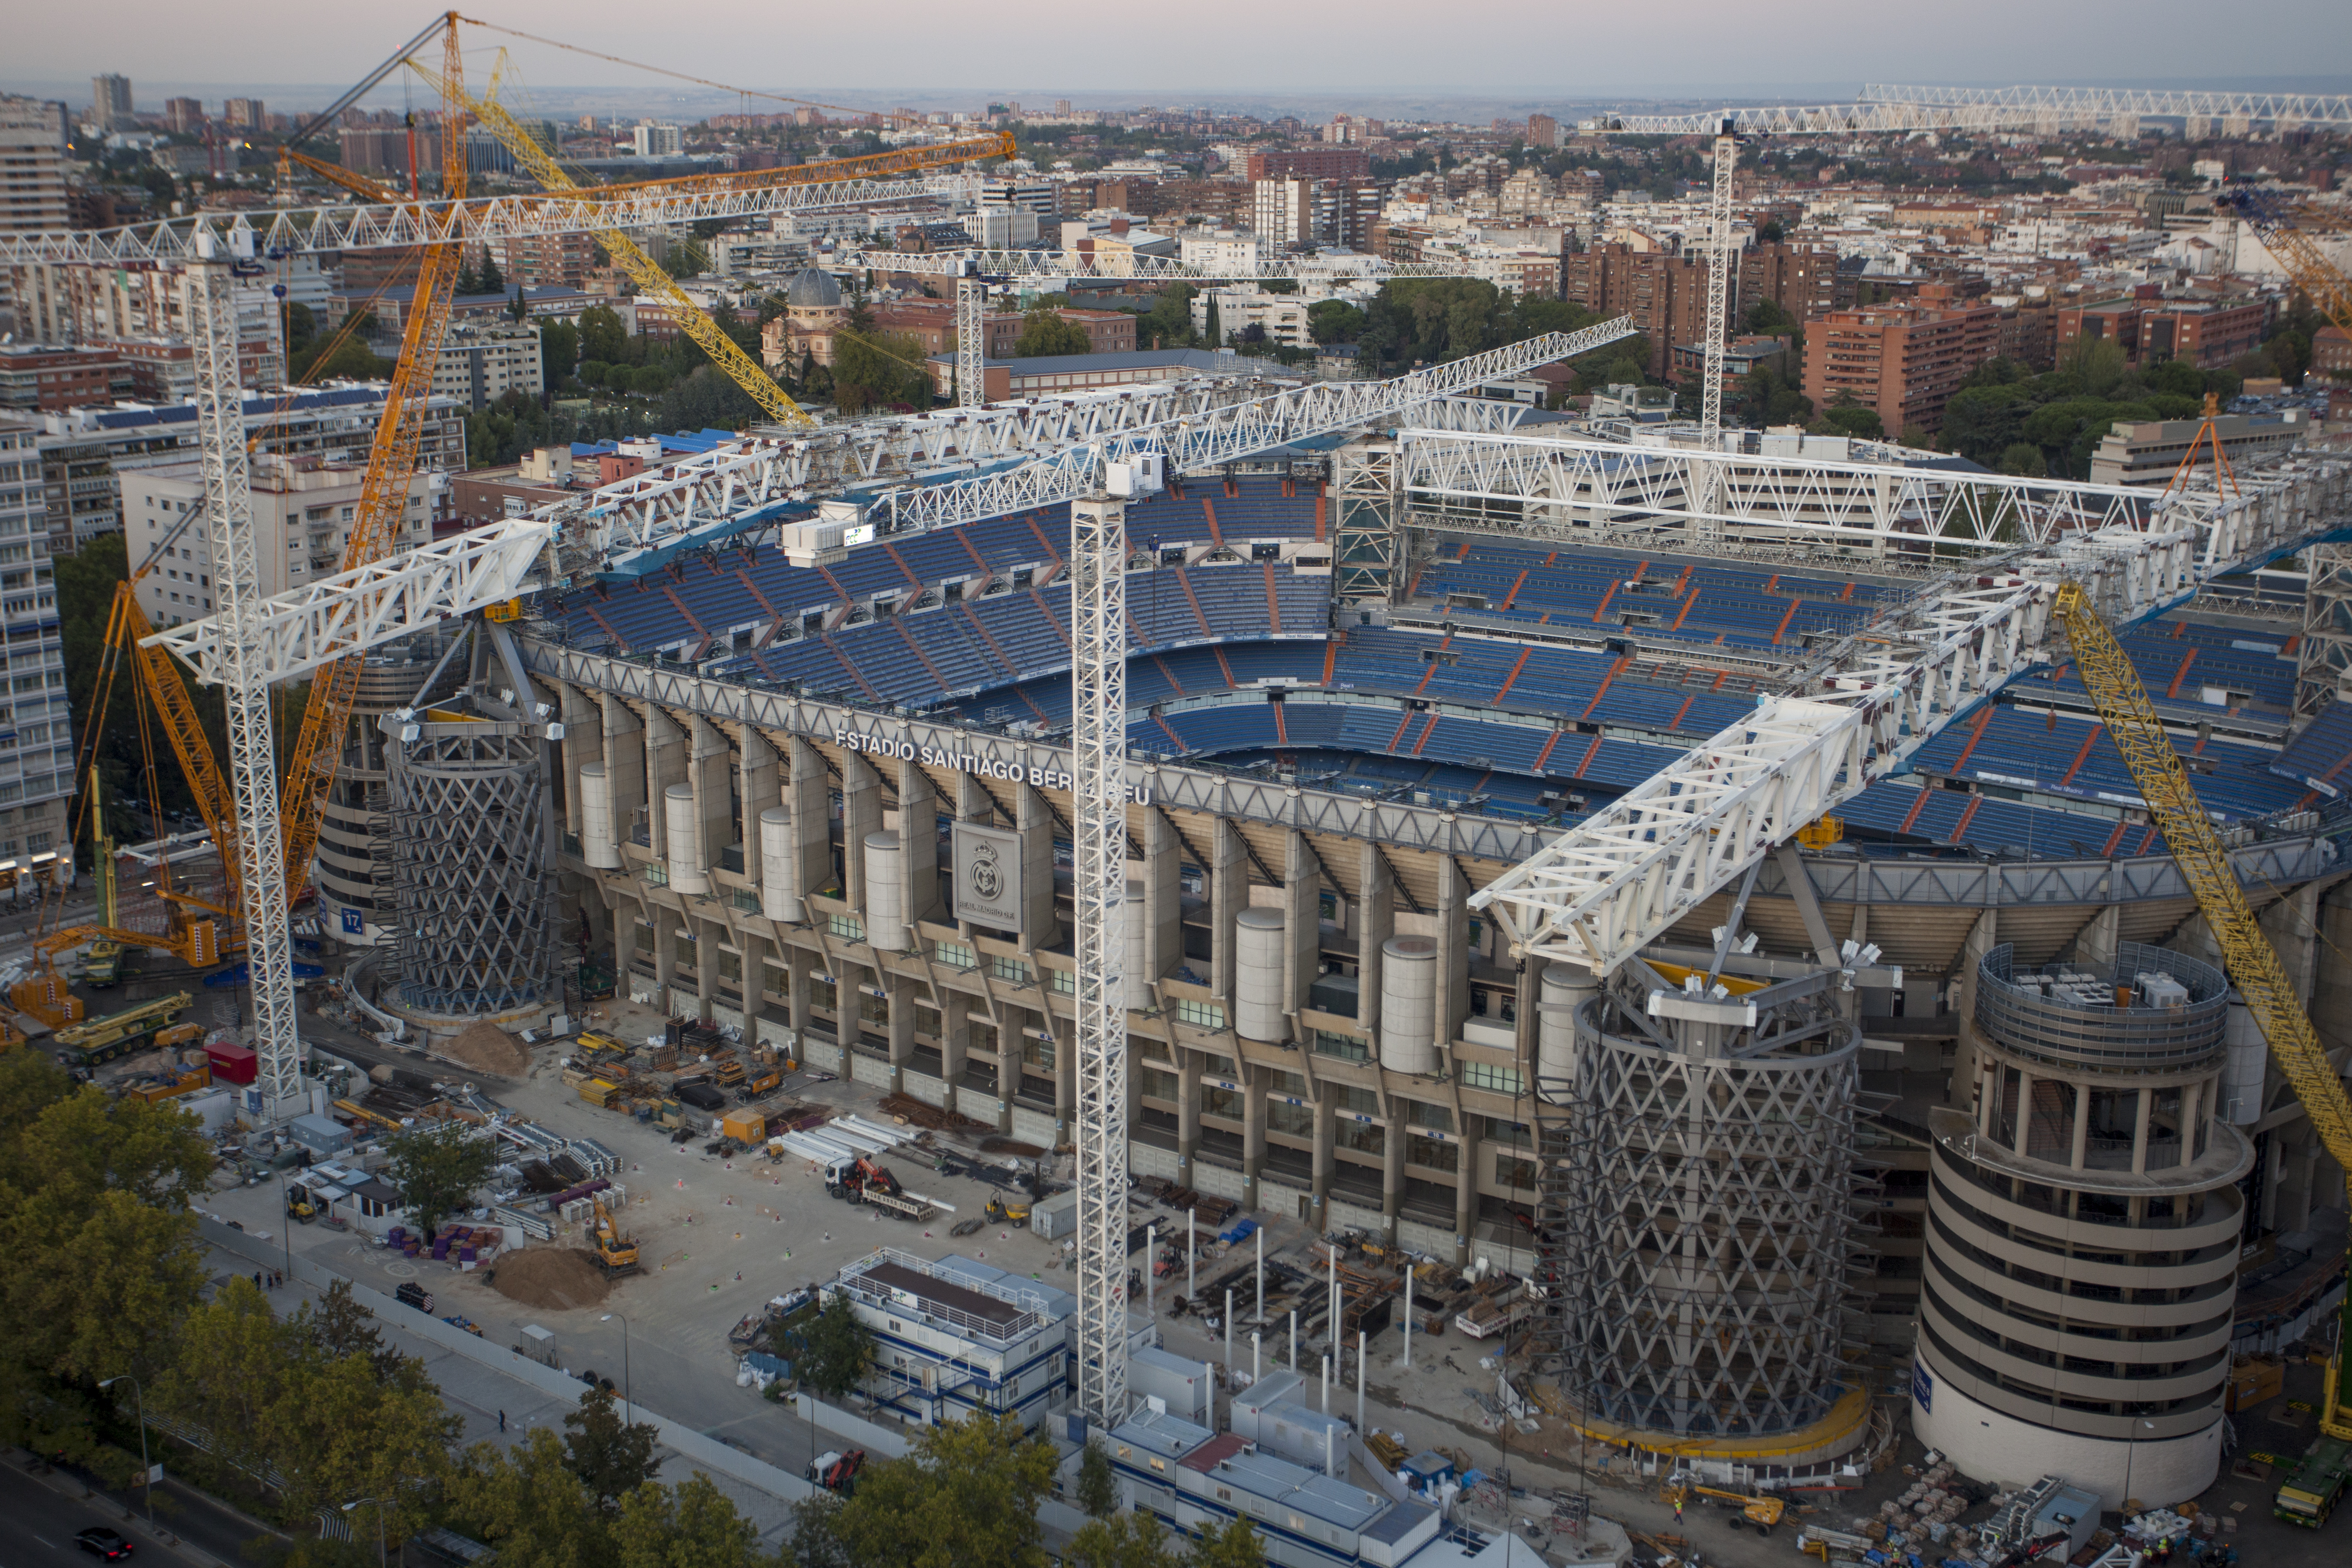 Обновленный «Бернабеу» станет одним из лучших стадионов в мире. Раздвижная крыша, рестораны Michelin, матчи по теннису